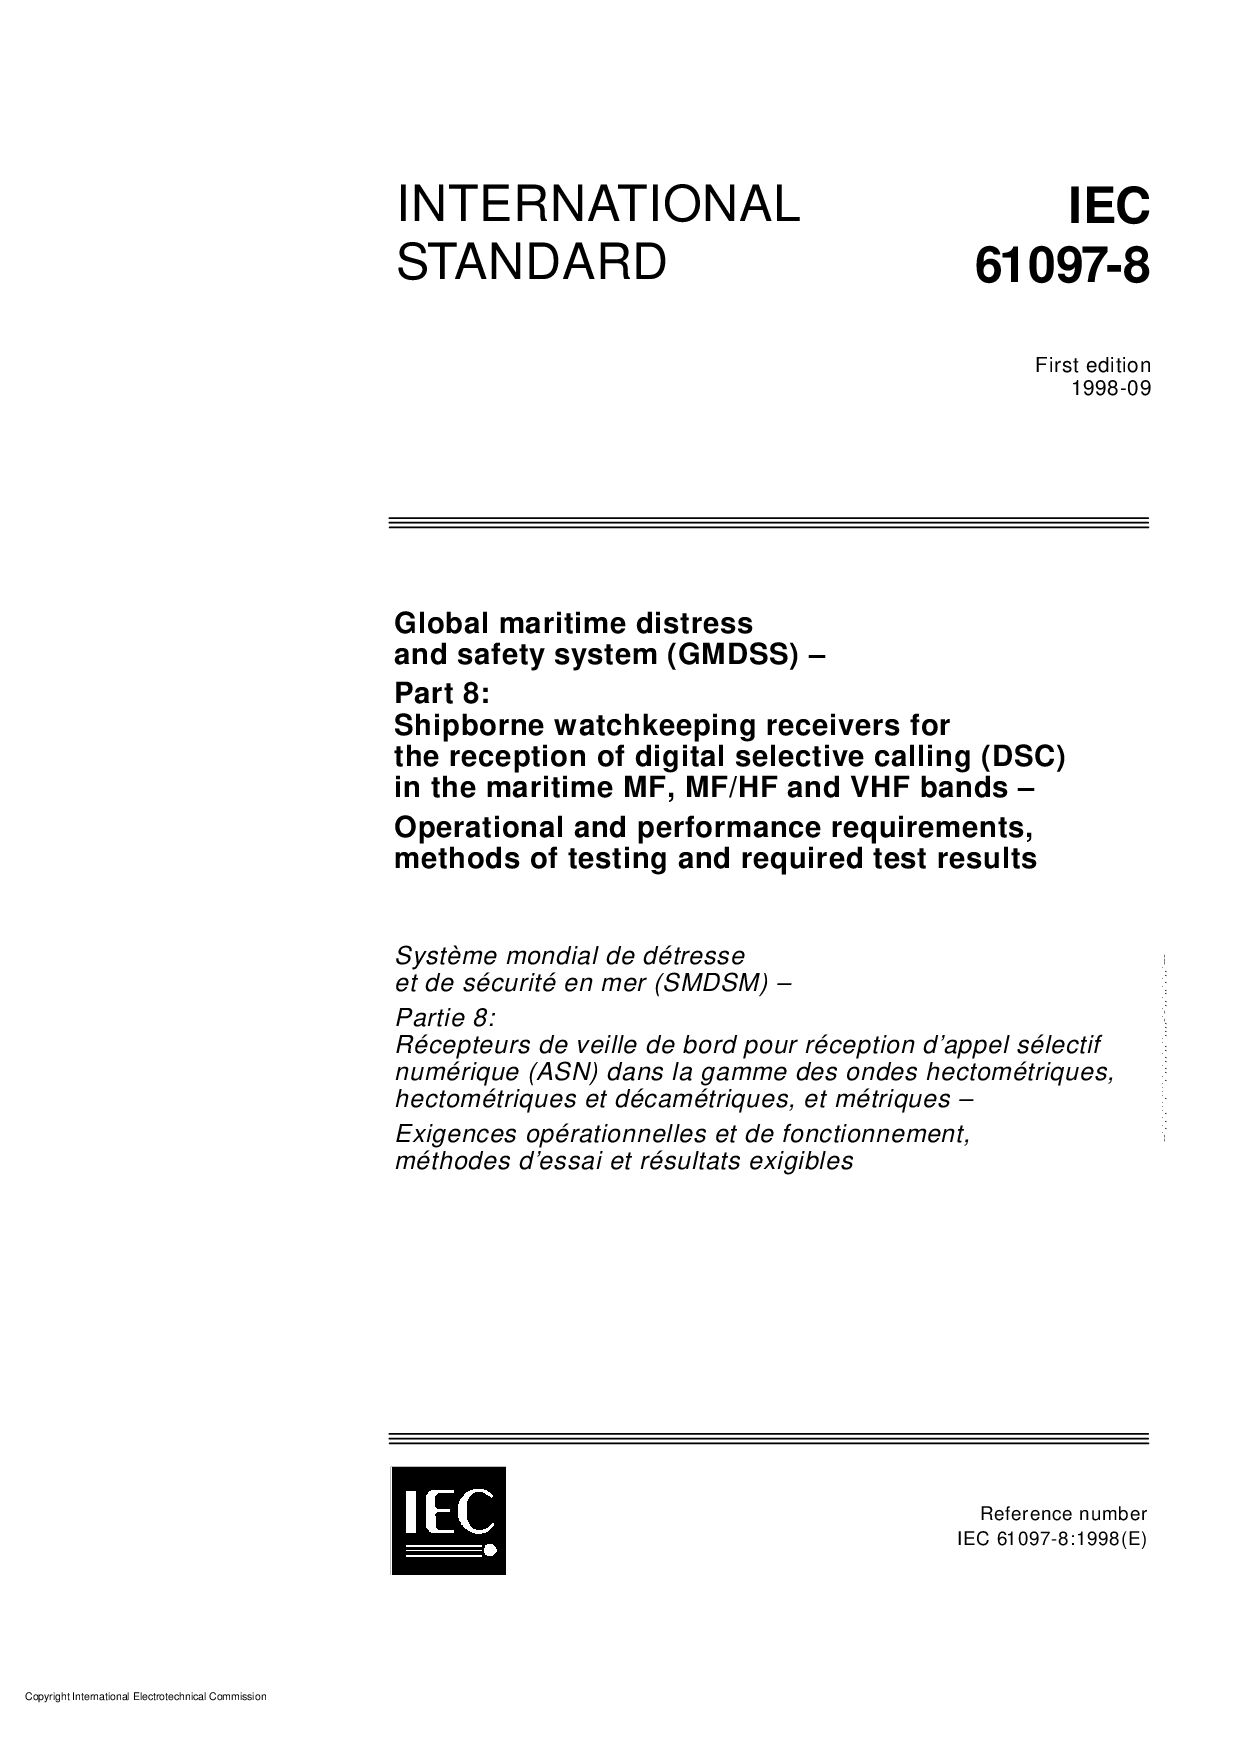 IEC 61097-8:1998